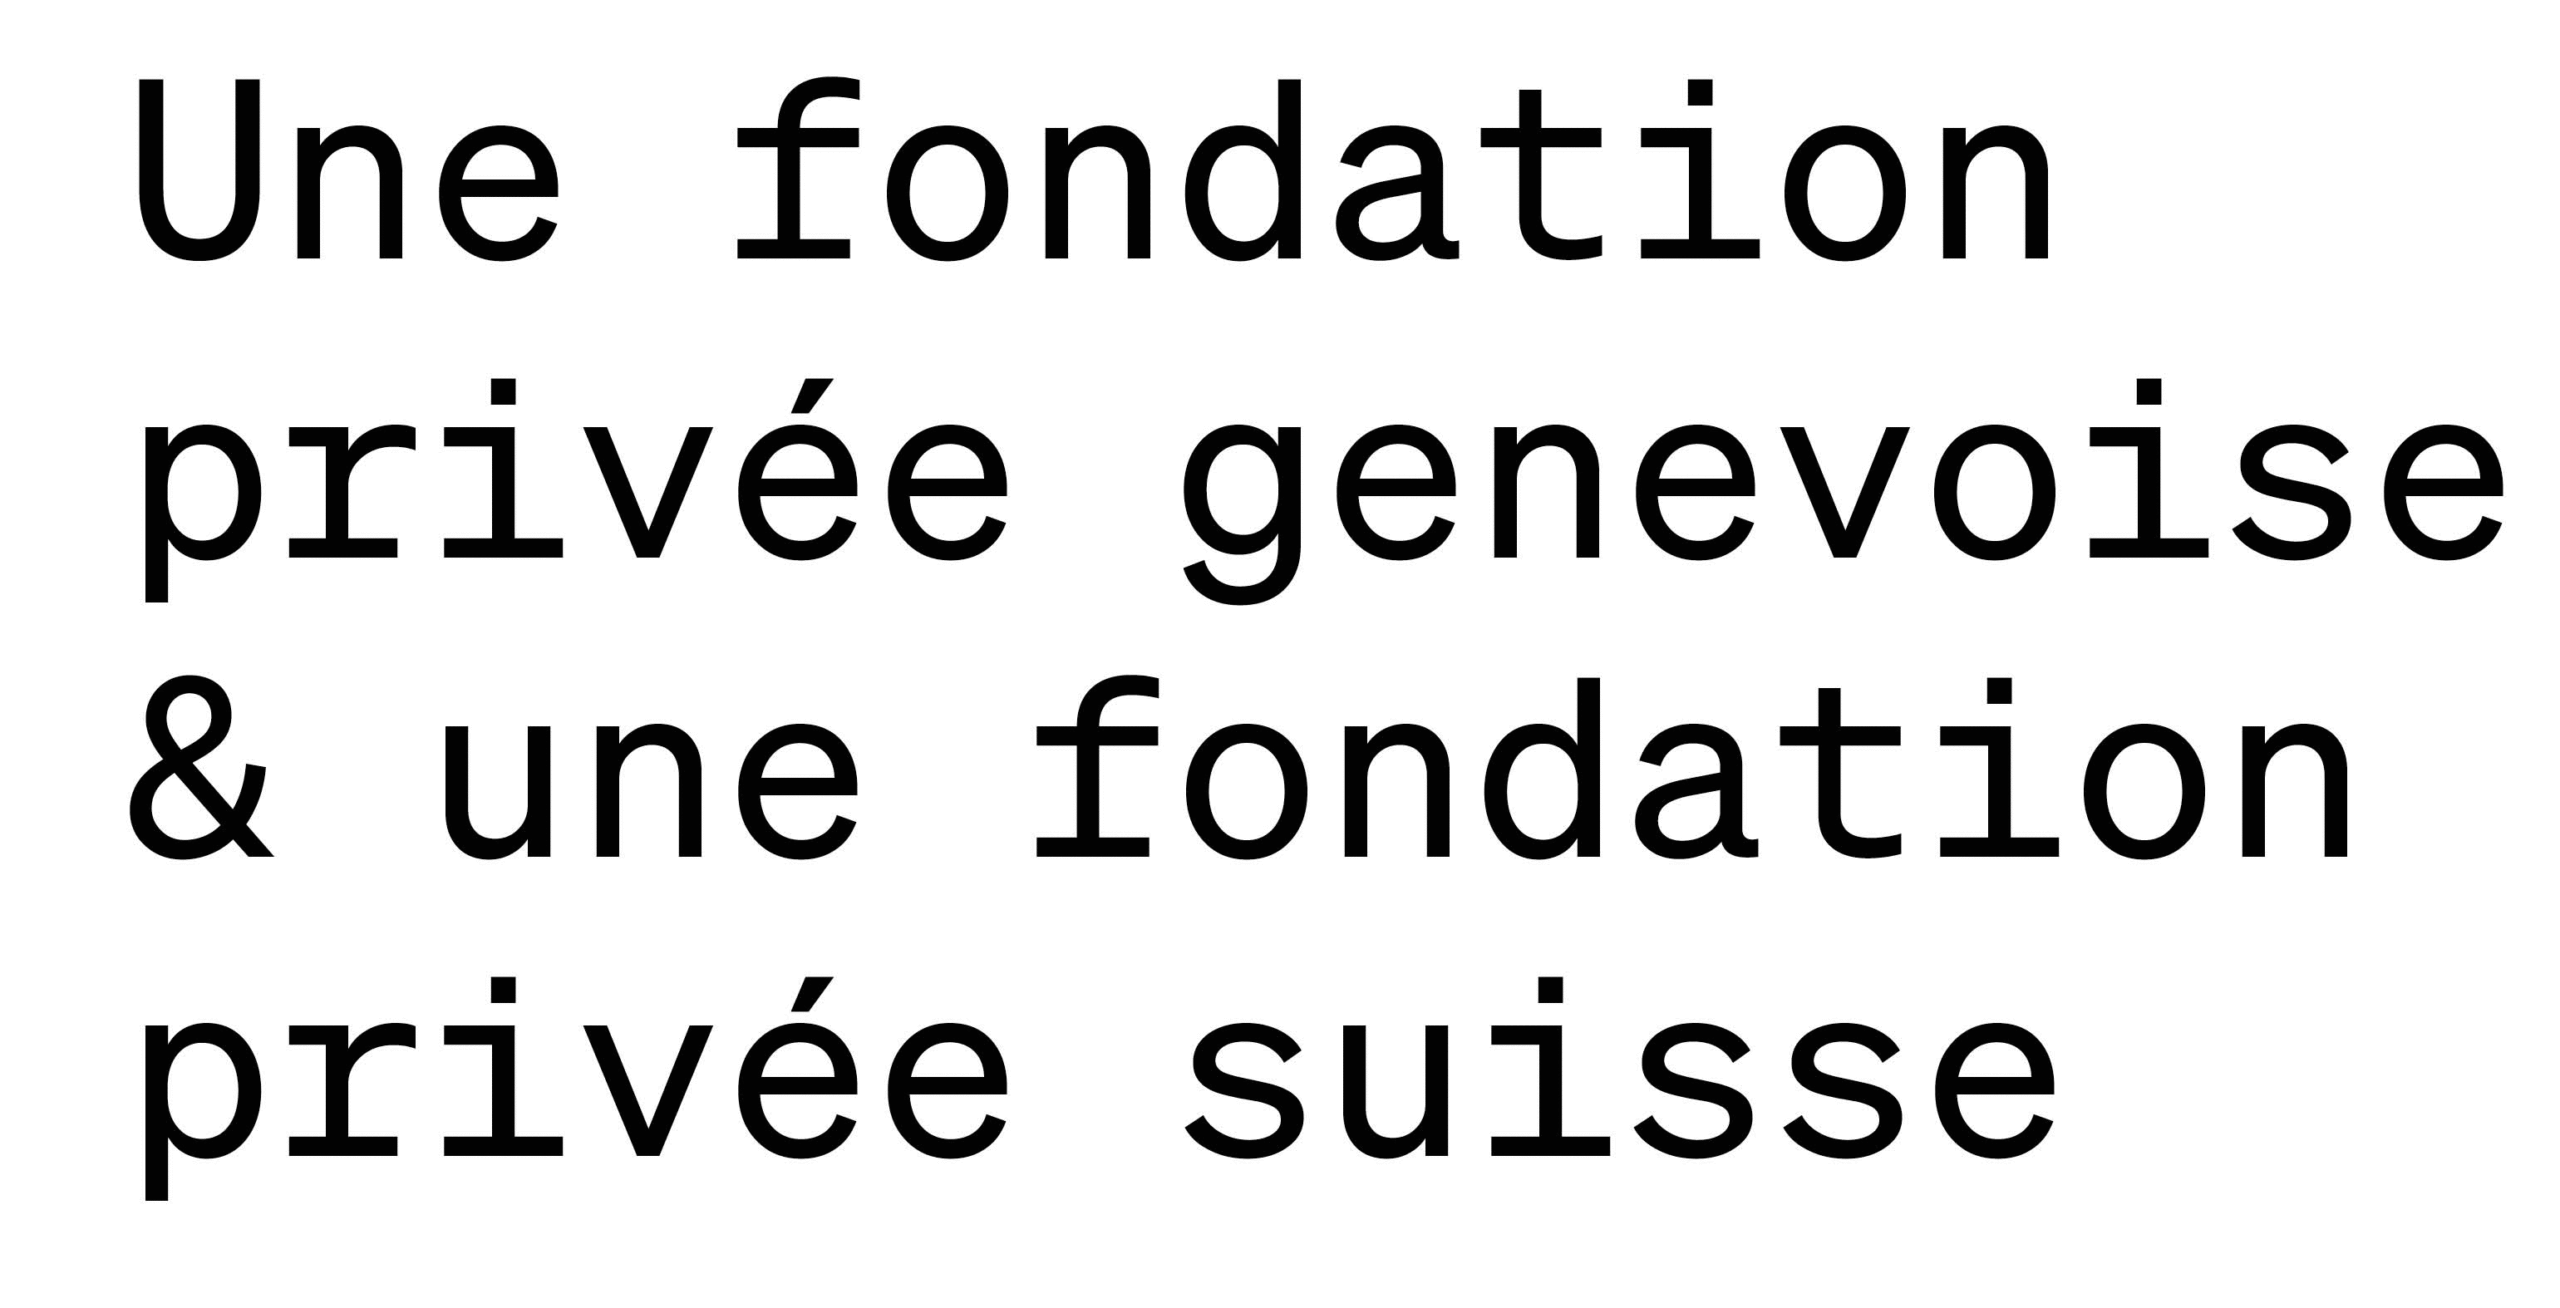 Une fondation privée genevoise & une fondation privée suisse